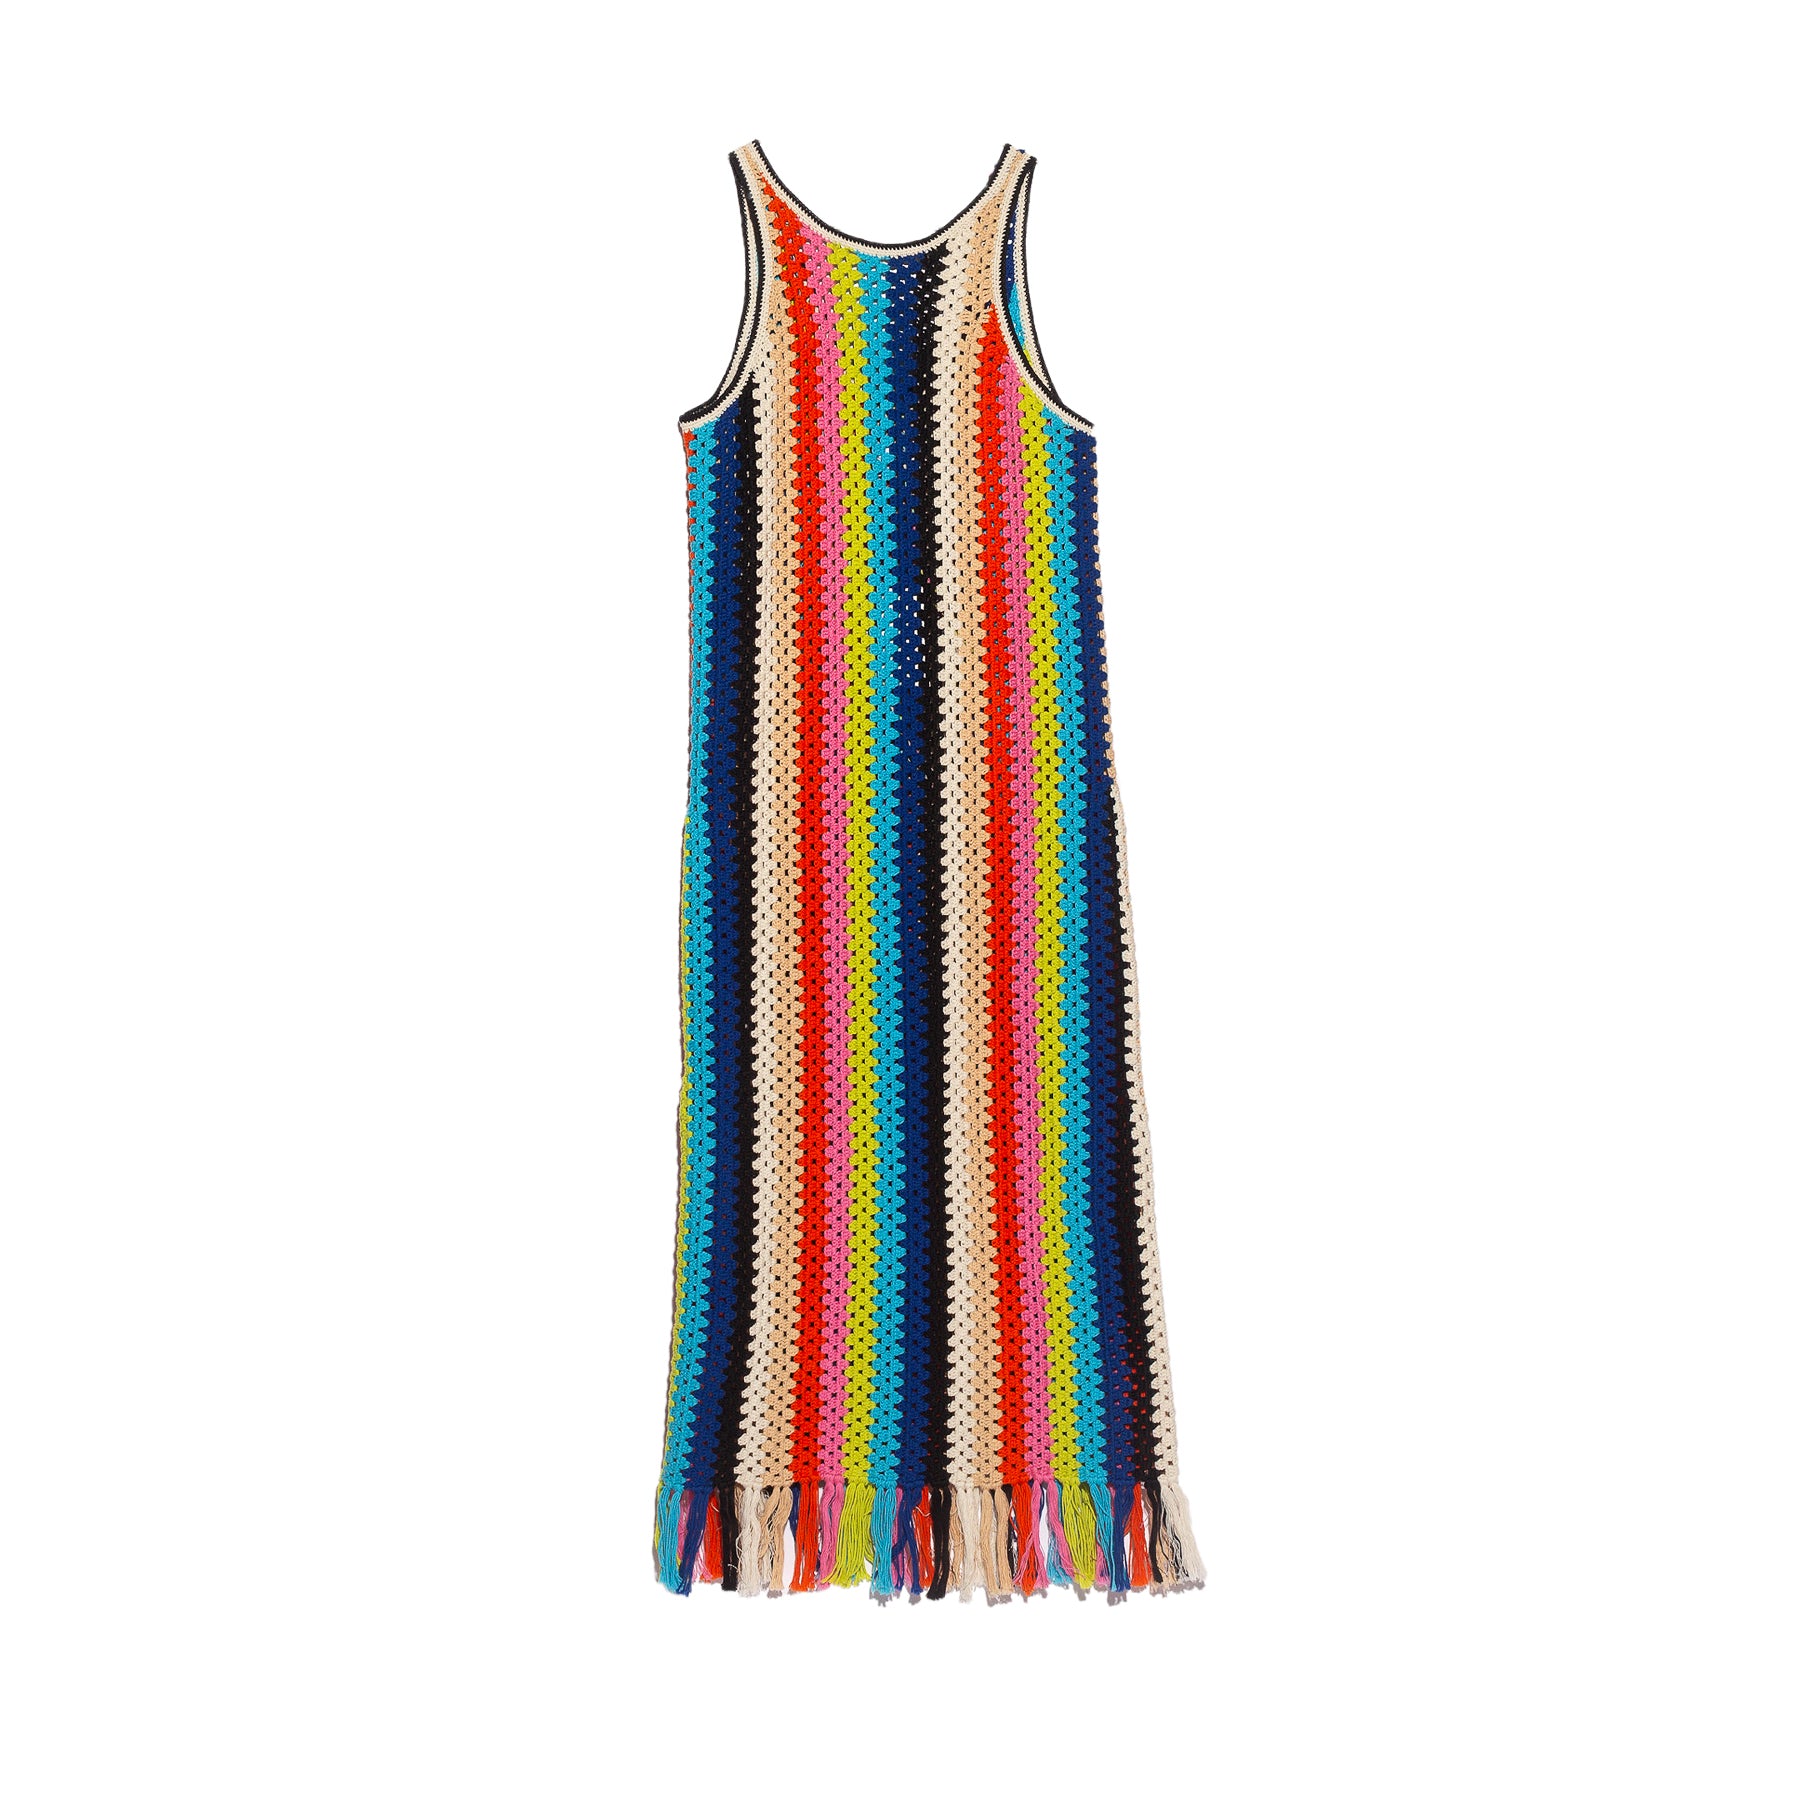 Eleven Six Natalie Crochet Dress Multi Color